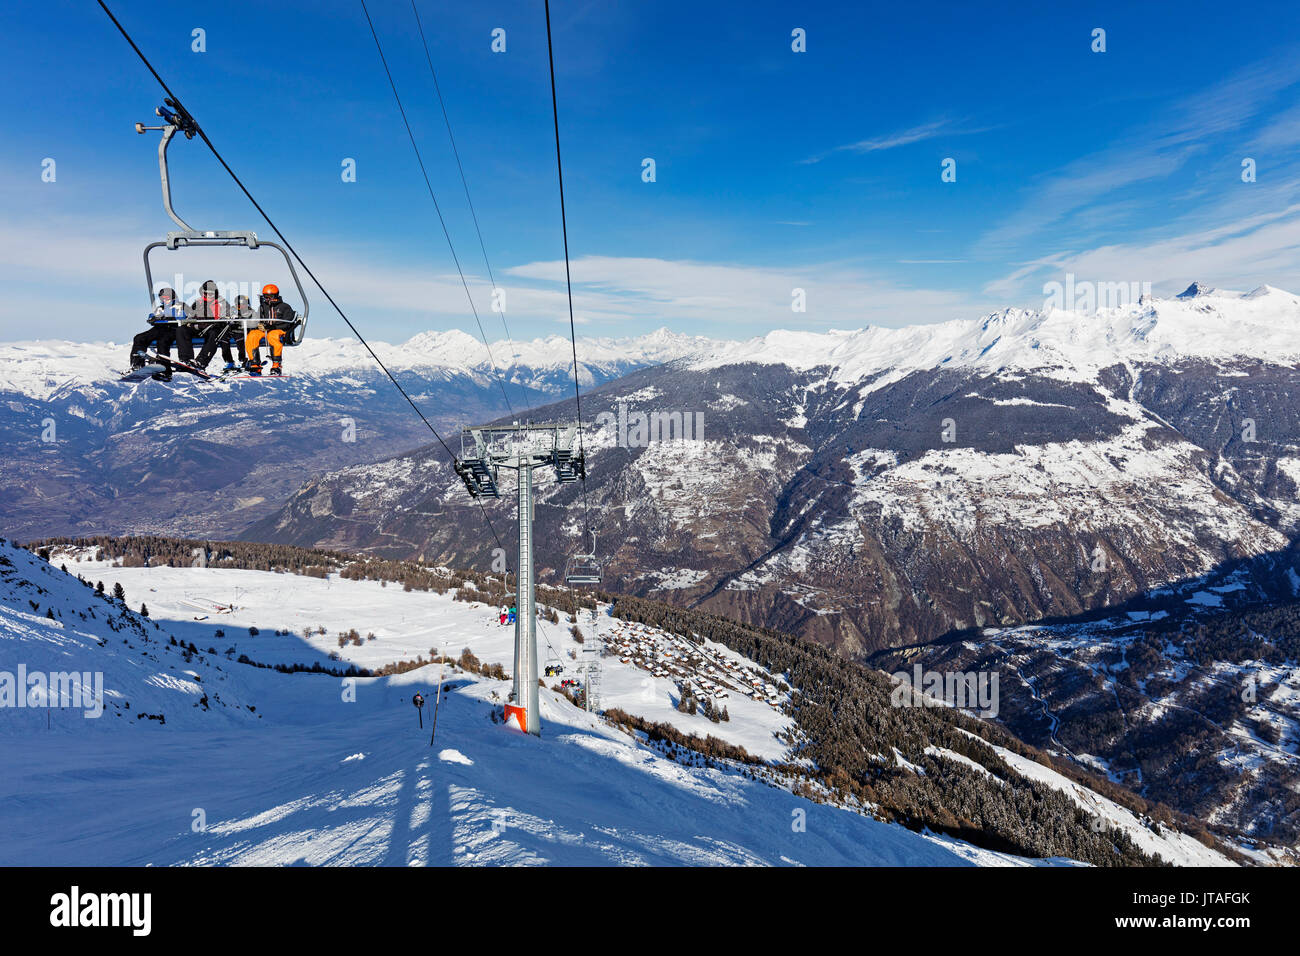 Skieurs sur un télésiège, Veysonnaz (Verbier), 4 Vallées, Valais, Alpes Suisses, Suisse, Europe Banque D'Images